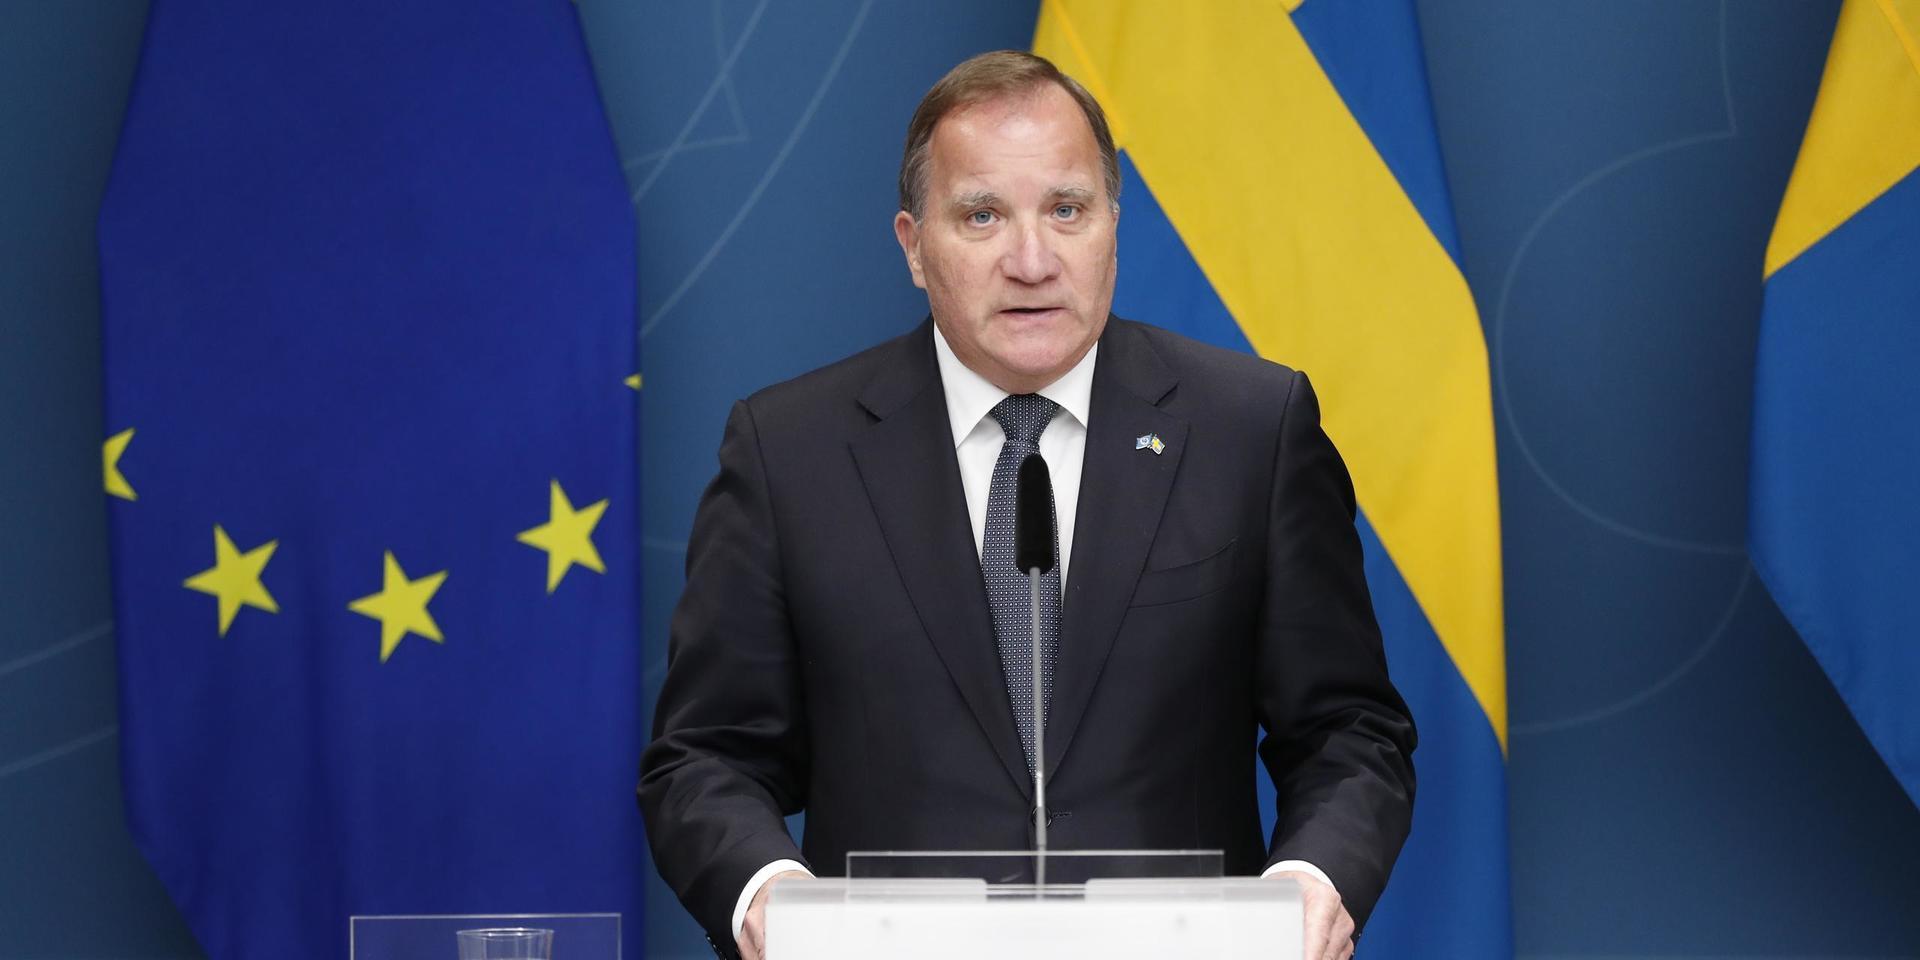 Statsminister Stefan Löfven vid pressträff. EU-flagga och svenska flaggan i bakgrunden.